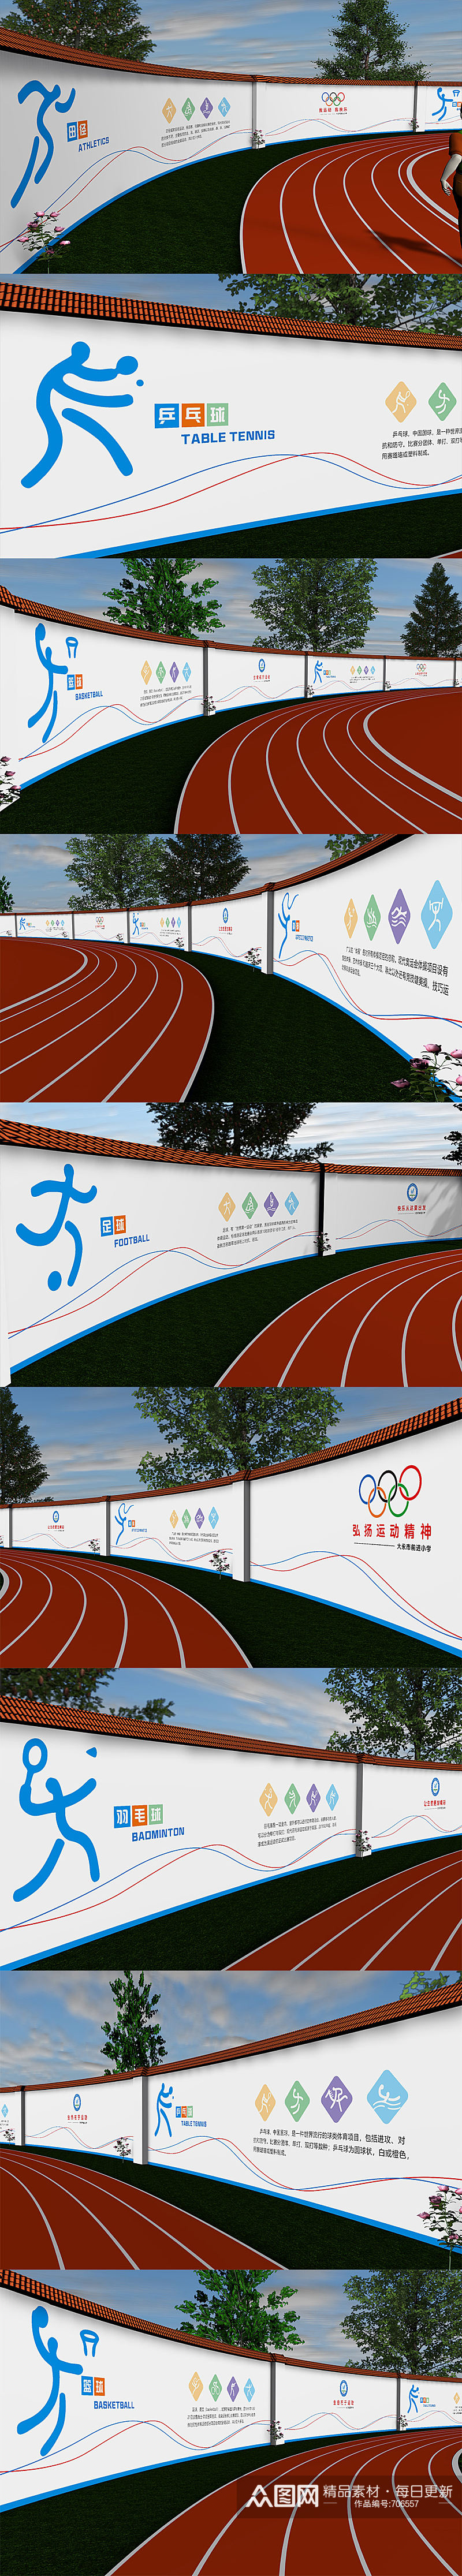 奥运会田径小学校园活动室户外学校体育操场围墙设计 室外运动文化墙素材